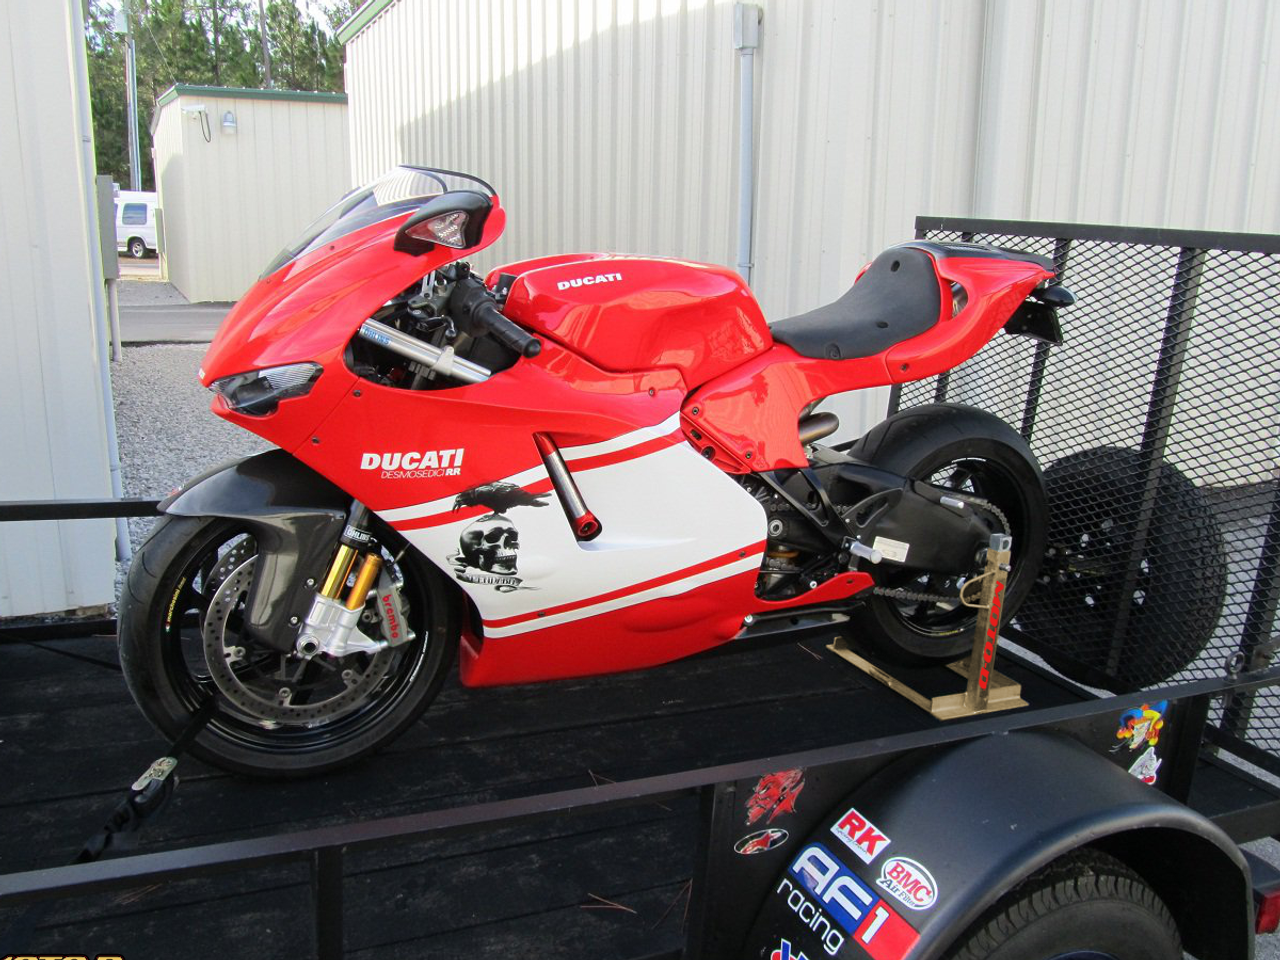 Motos Racing  Site Oficial Yamaha Motos